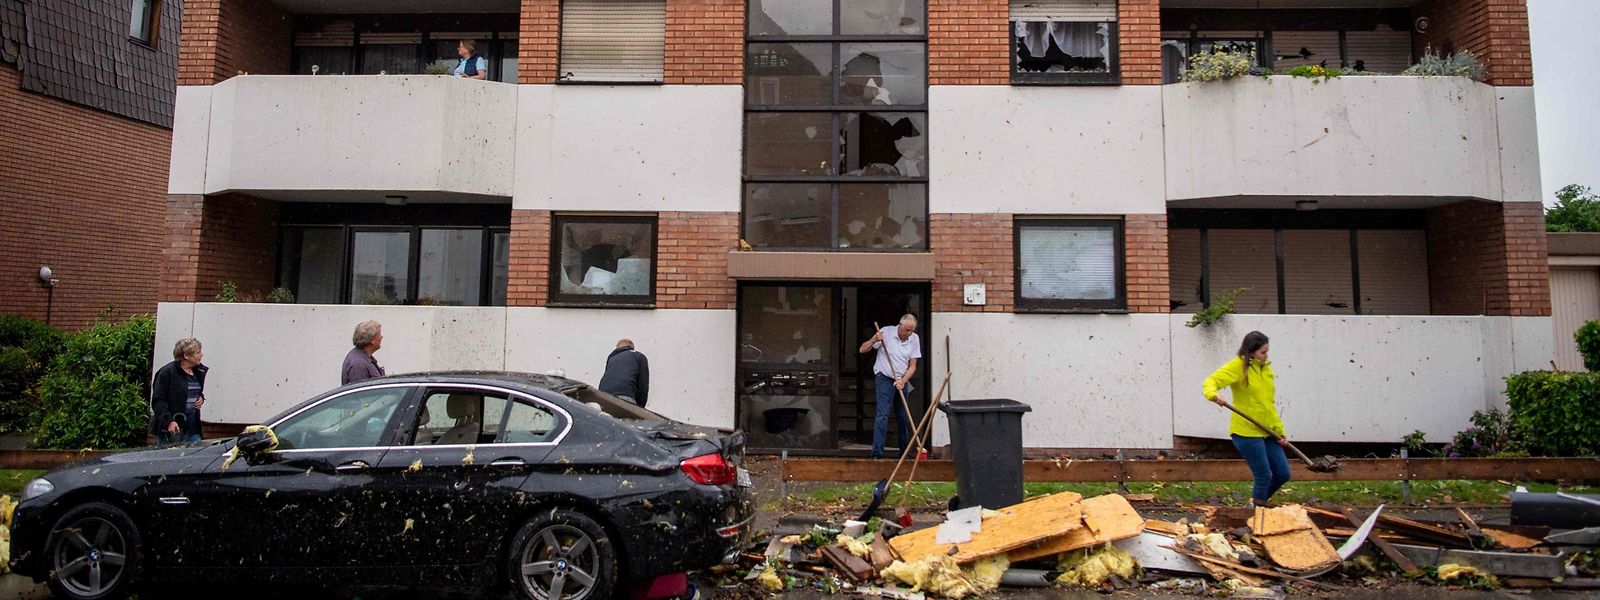 Des habitants dégagent les débris devant un immeuble d'habitation à Paderborn, dans l'ouest de l'Allemagne.